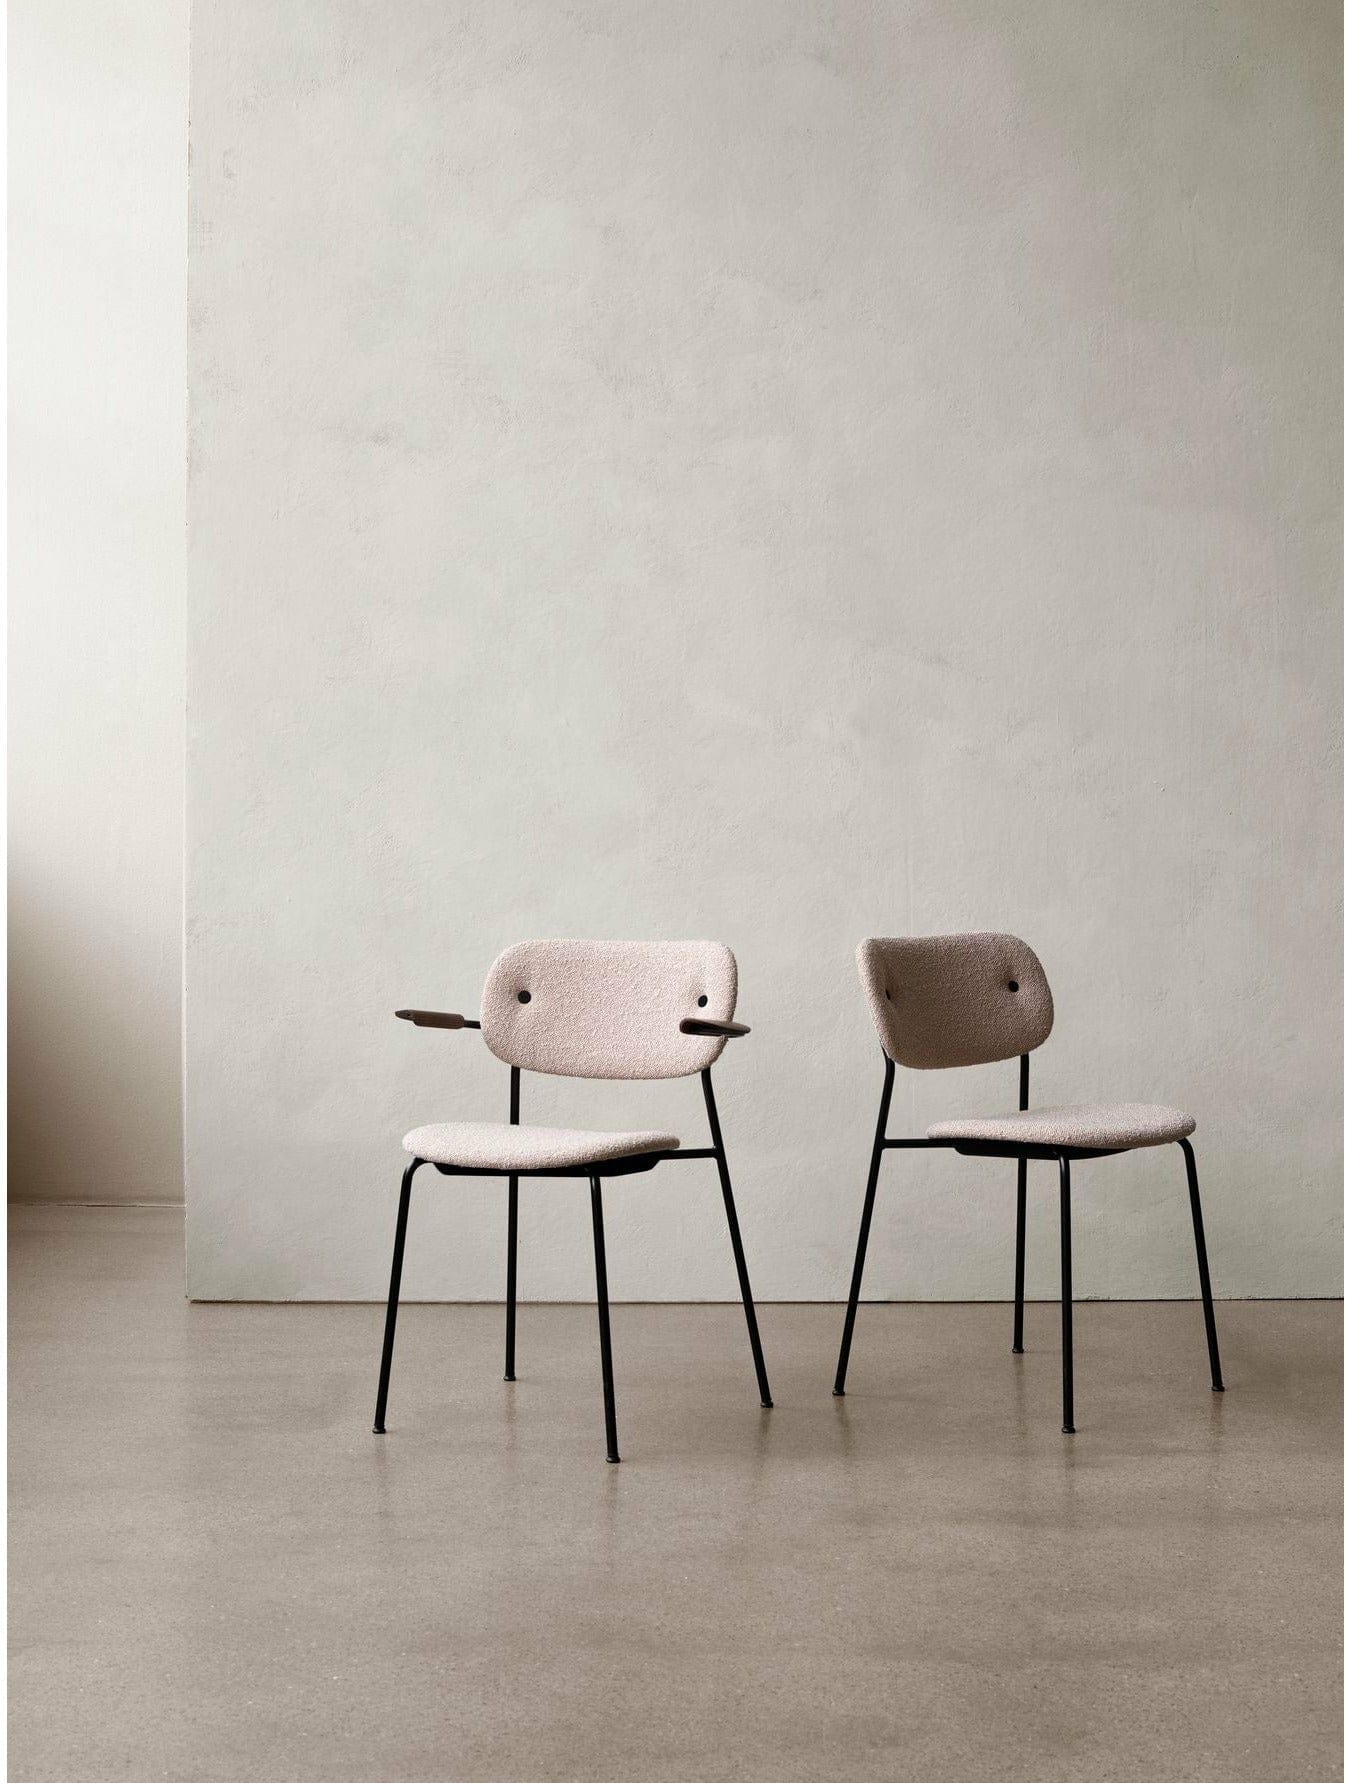 Audo Copenhagen Co Chair Full Upholstery With Armrest Black Oak, Chrome/Dakar 0842